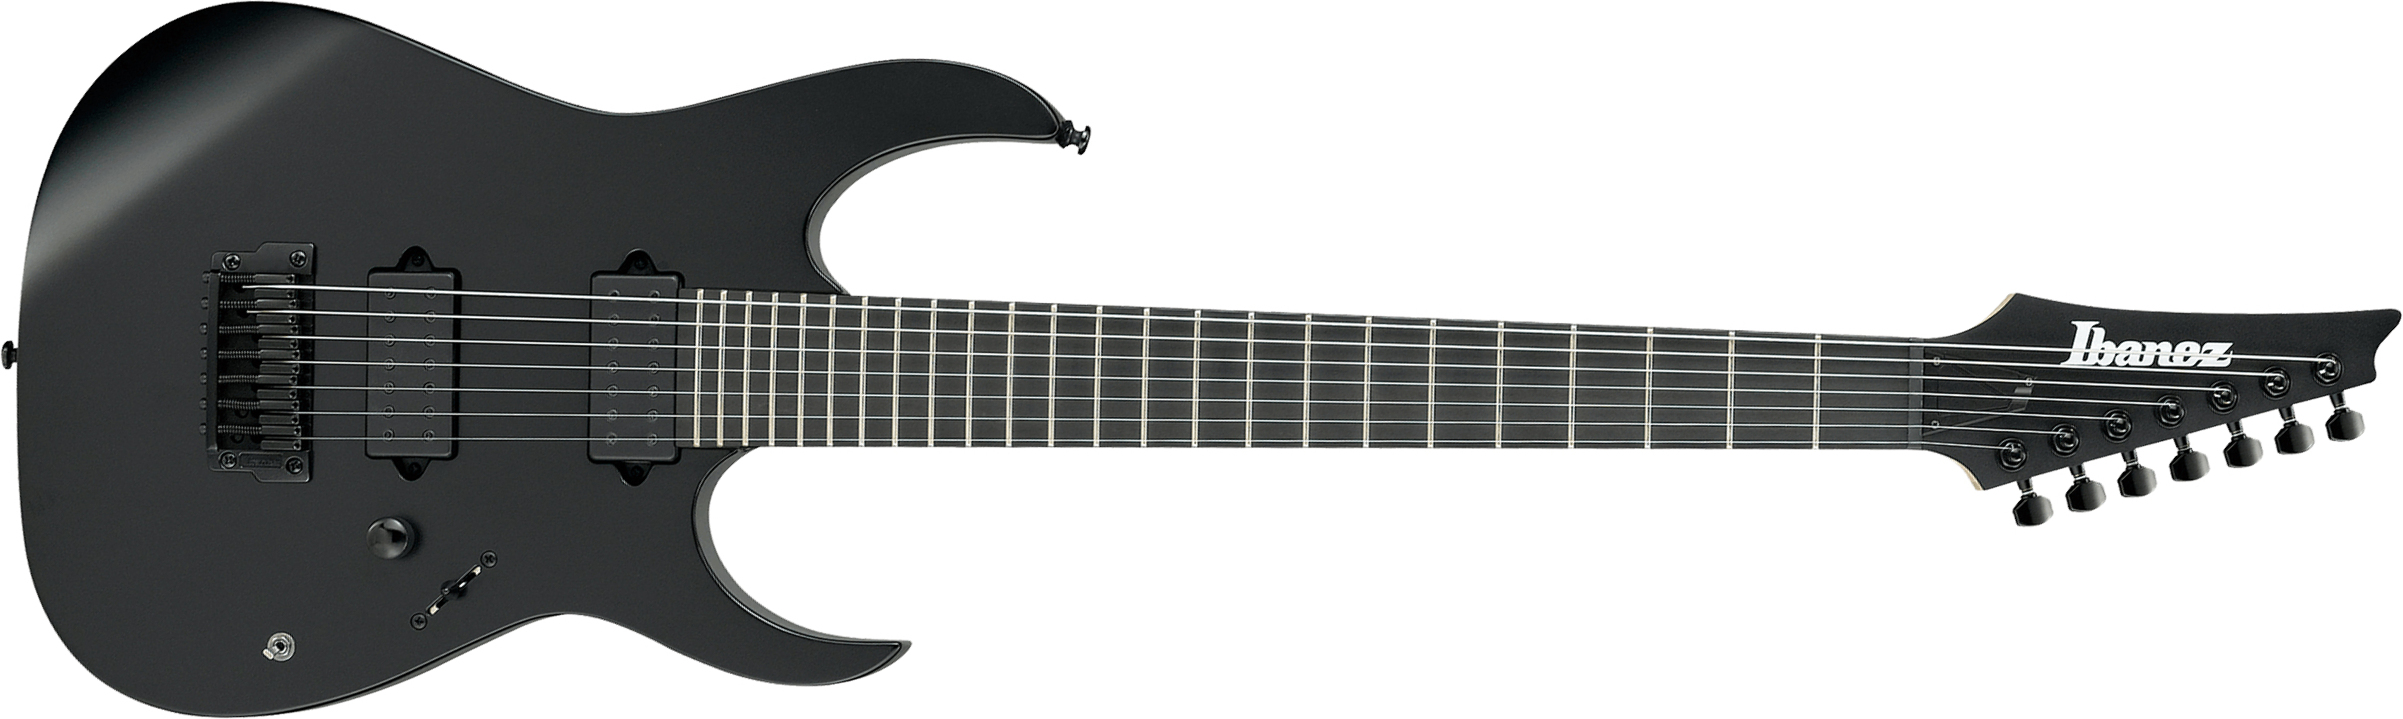 Ibanez Rgixl7 Bkf Iron Label Hh Dimarzio Ht Eb - Black Flat - 7-saitige E-Gitarre - Main picture